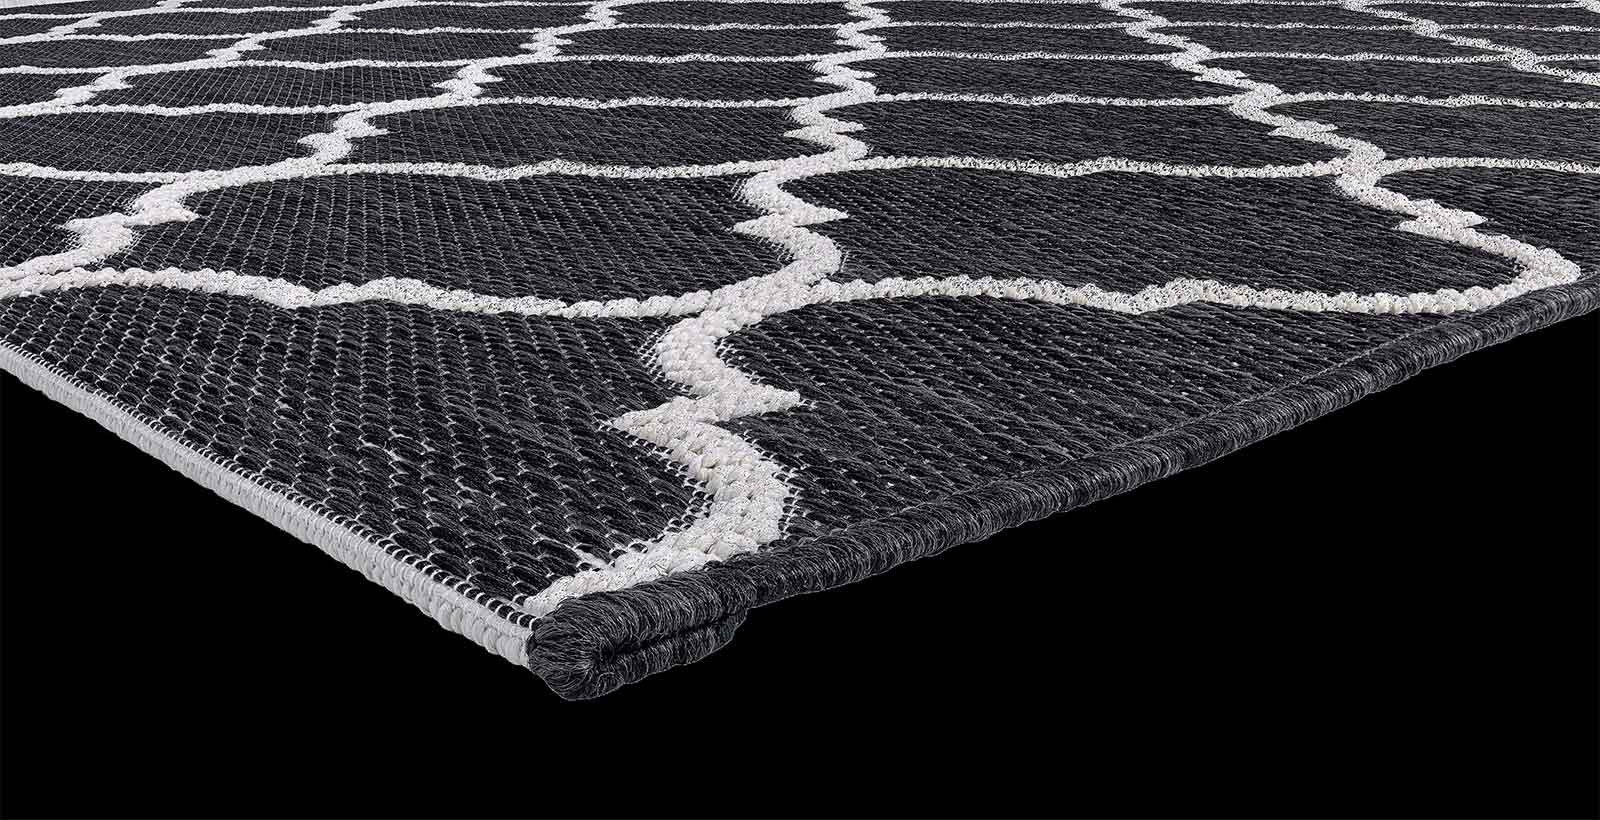 Motivi geometrici, dominante nera. Un tappeto rettangolare da esterno 100% polipropilene pratico e resistente.